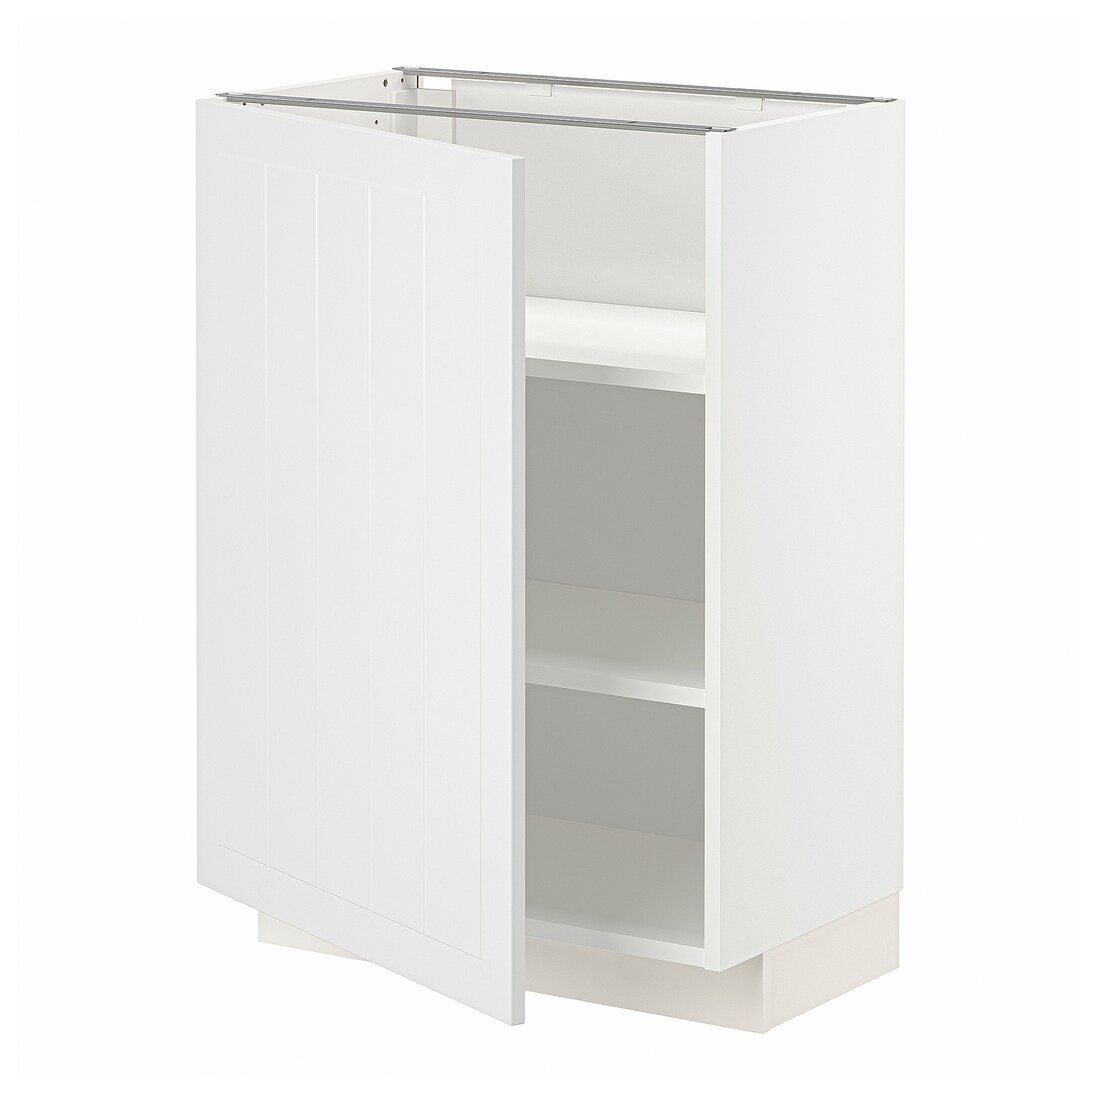 IKEA METOD МЕТОД Напольный шкаф с полками, белый / Stensund белый, 60x37 см 99468353 | 994.683.53